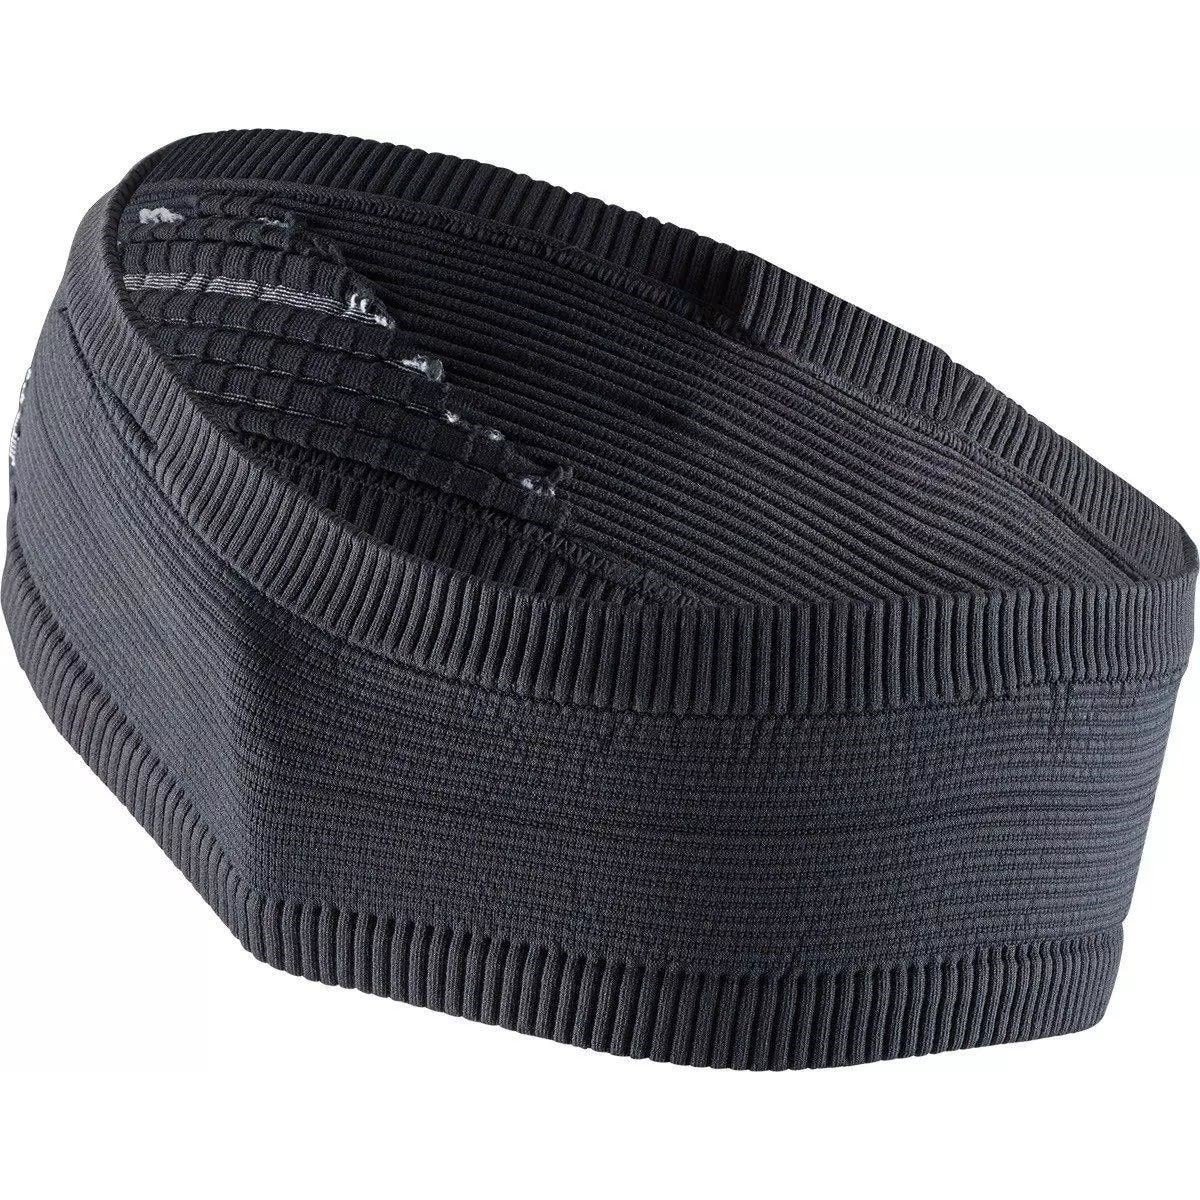 Čelenka X-Bionic Headband 4.0 - černá/šedá